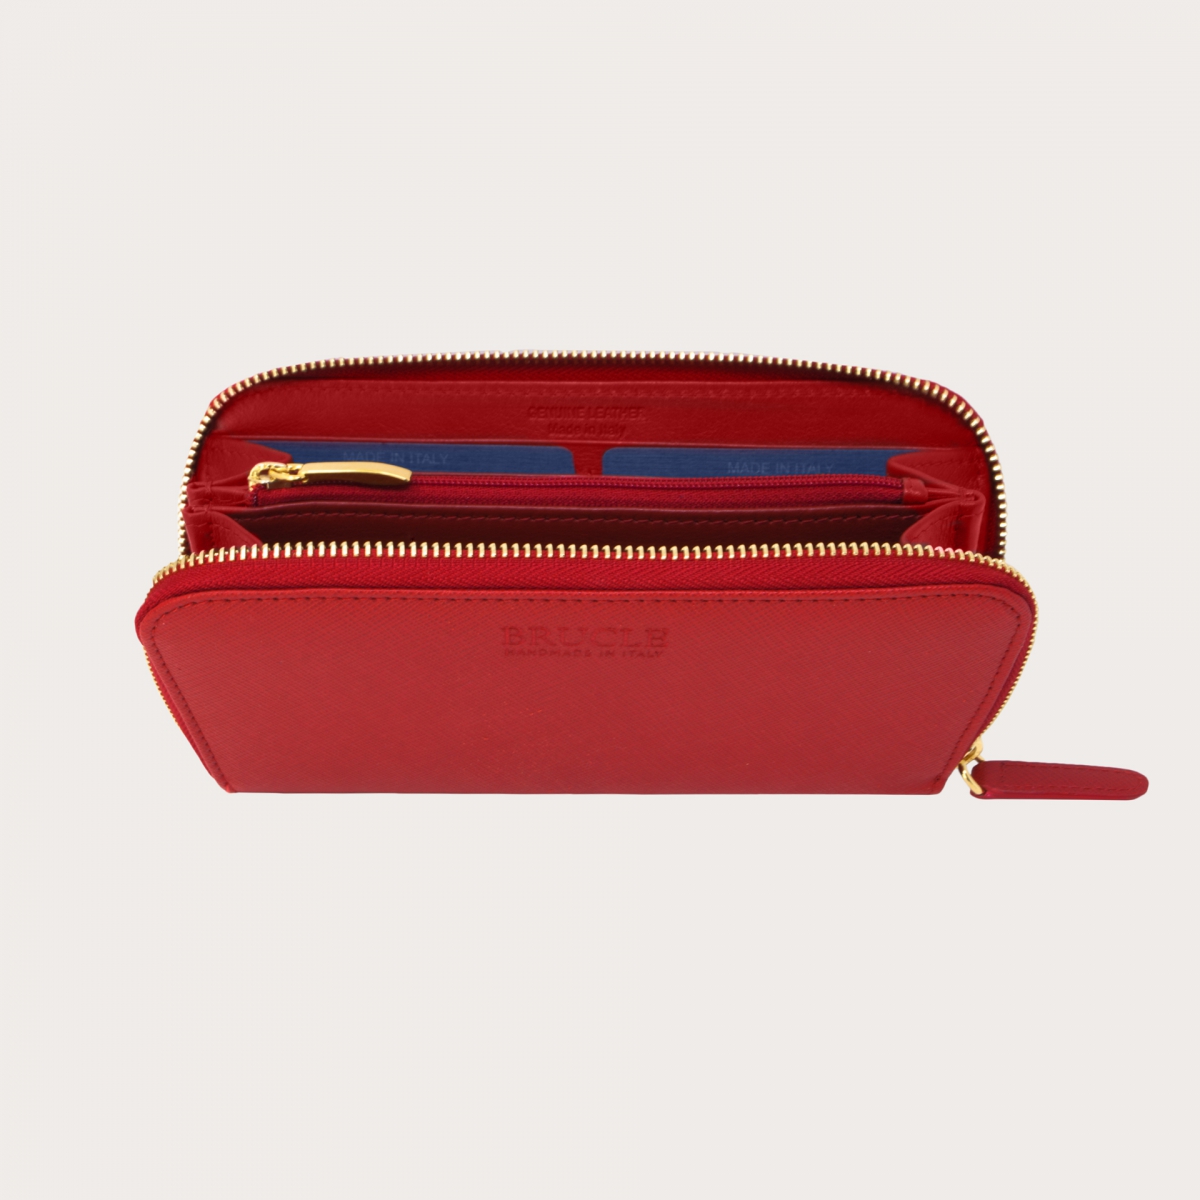 BRUCLE Elegante portafoglio da donna in stampa saffiano con zip oro, rosso rubino